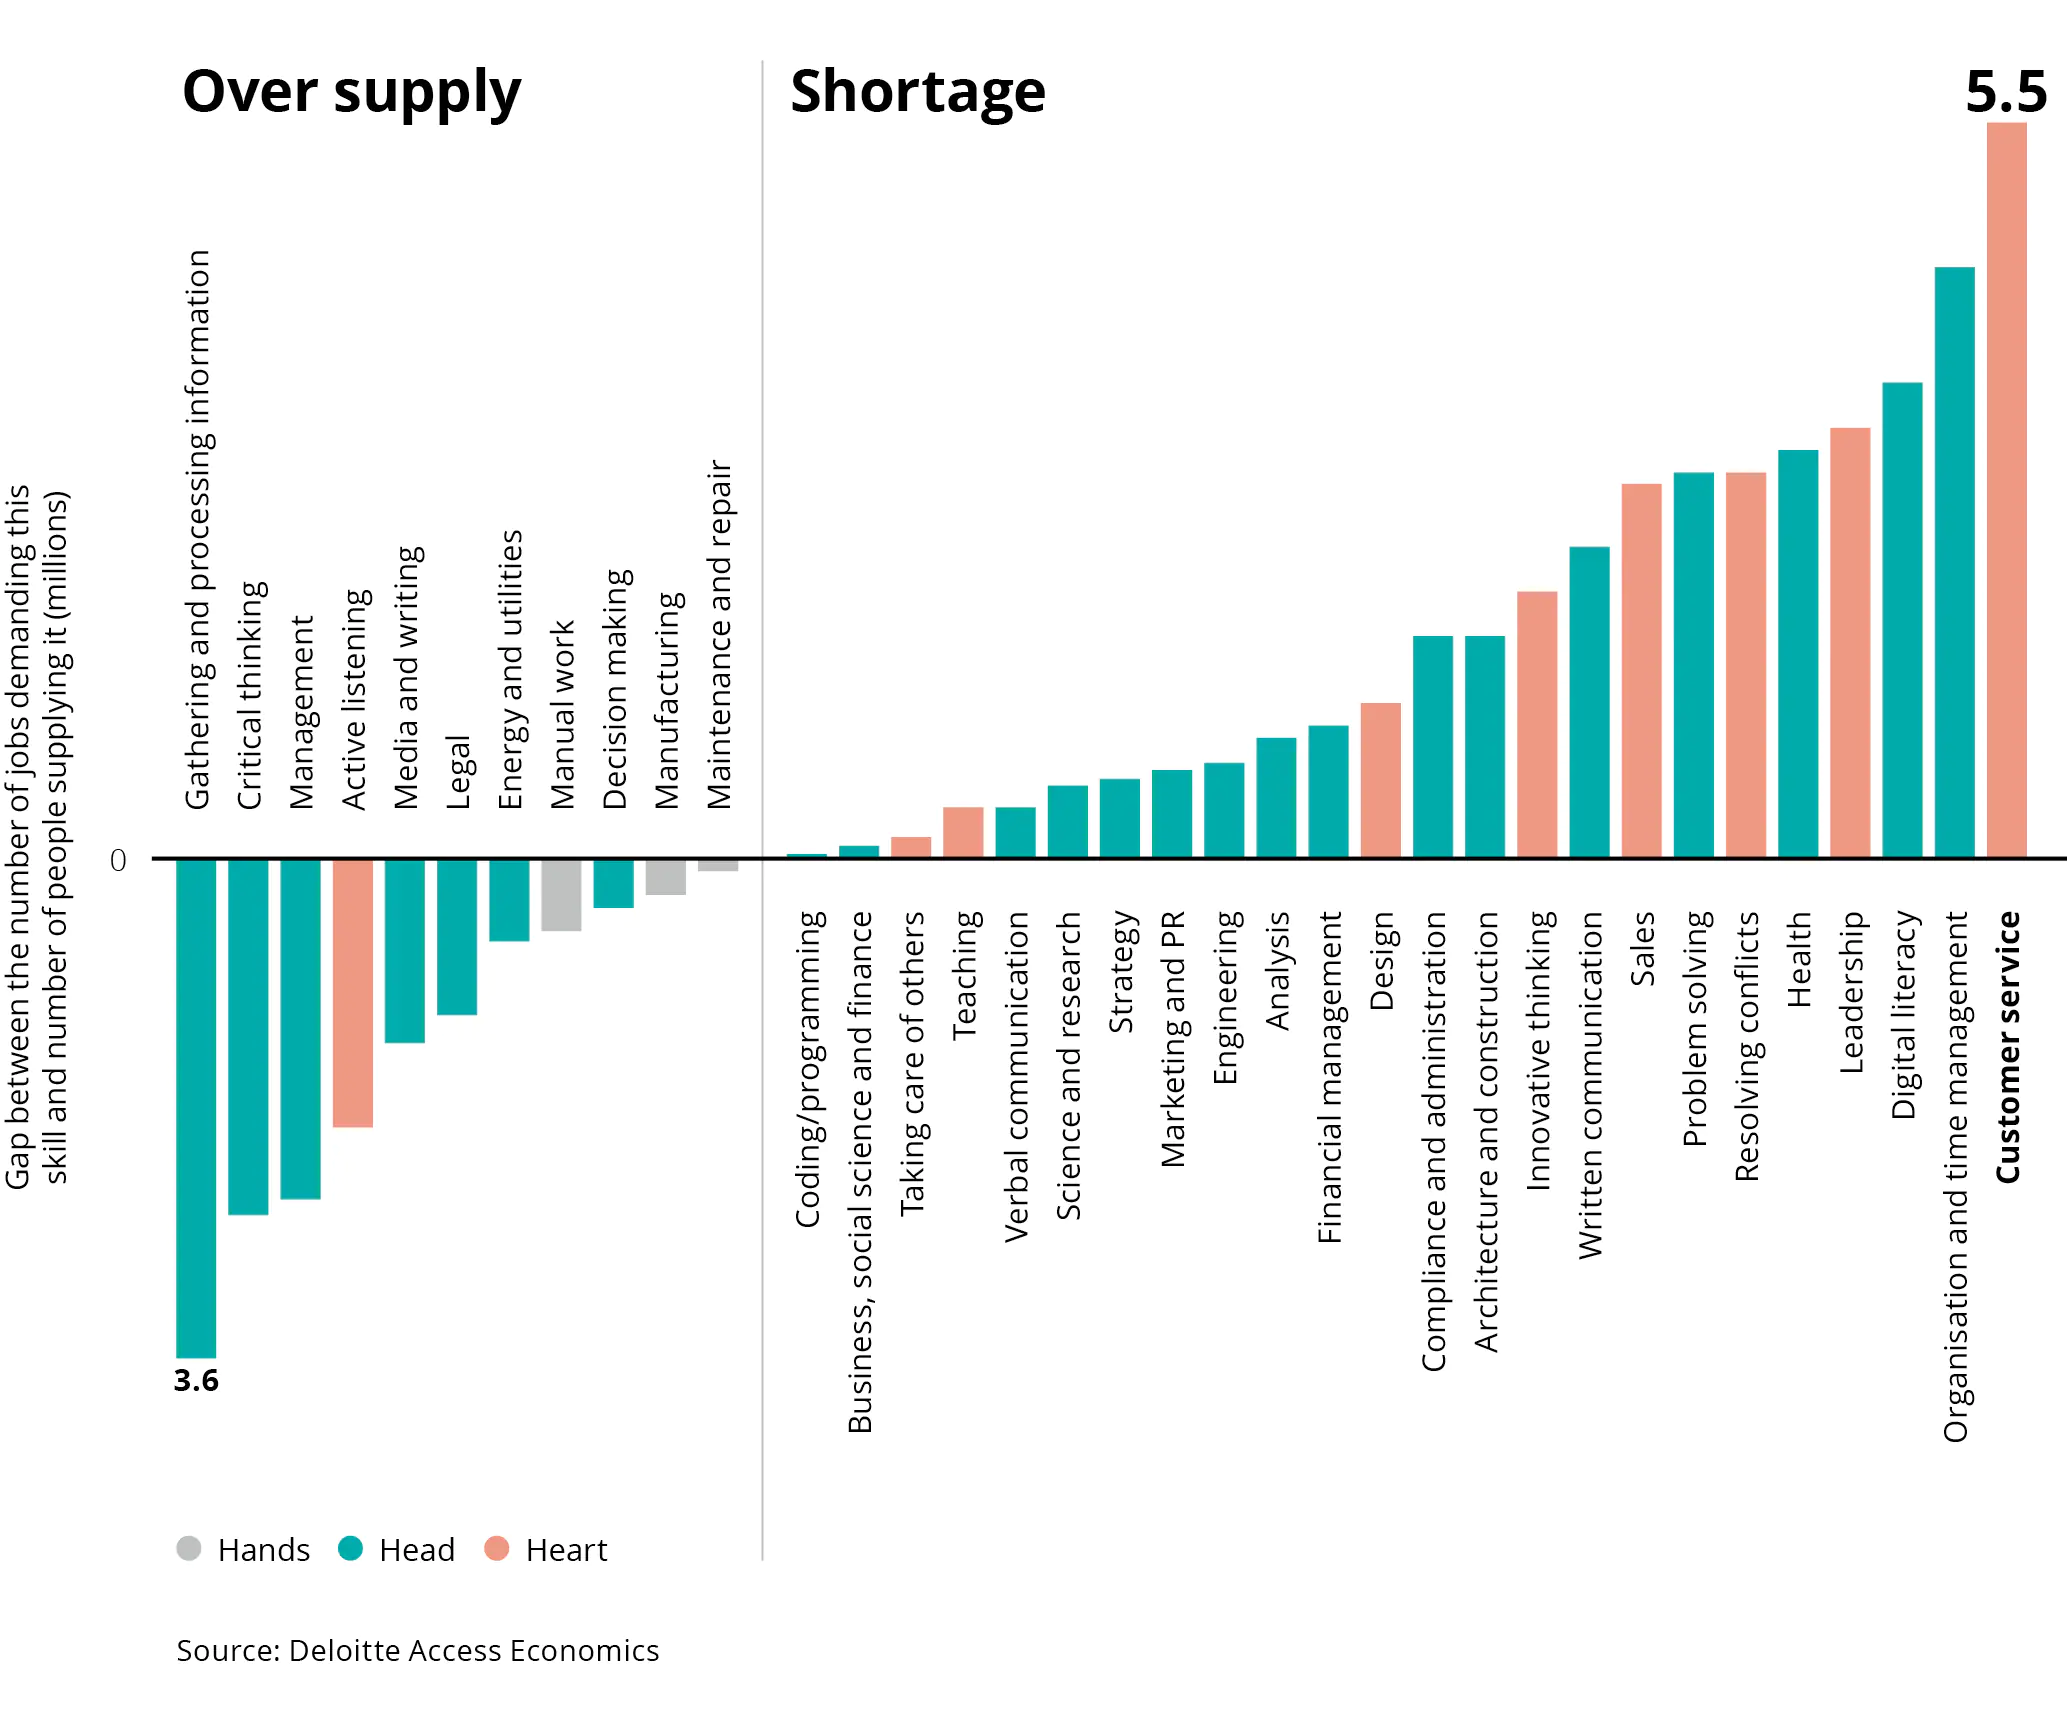 Australia Over supply / Shortage - Credit: Deloitte Access Economics